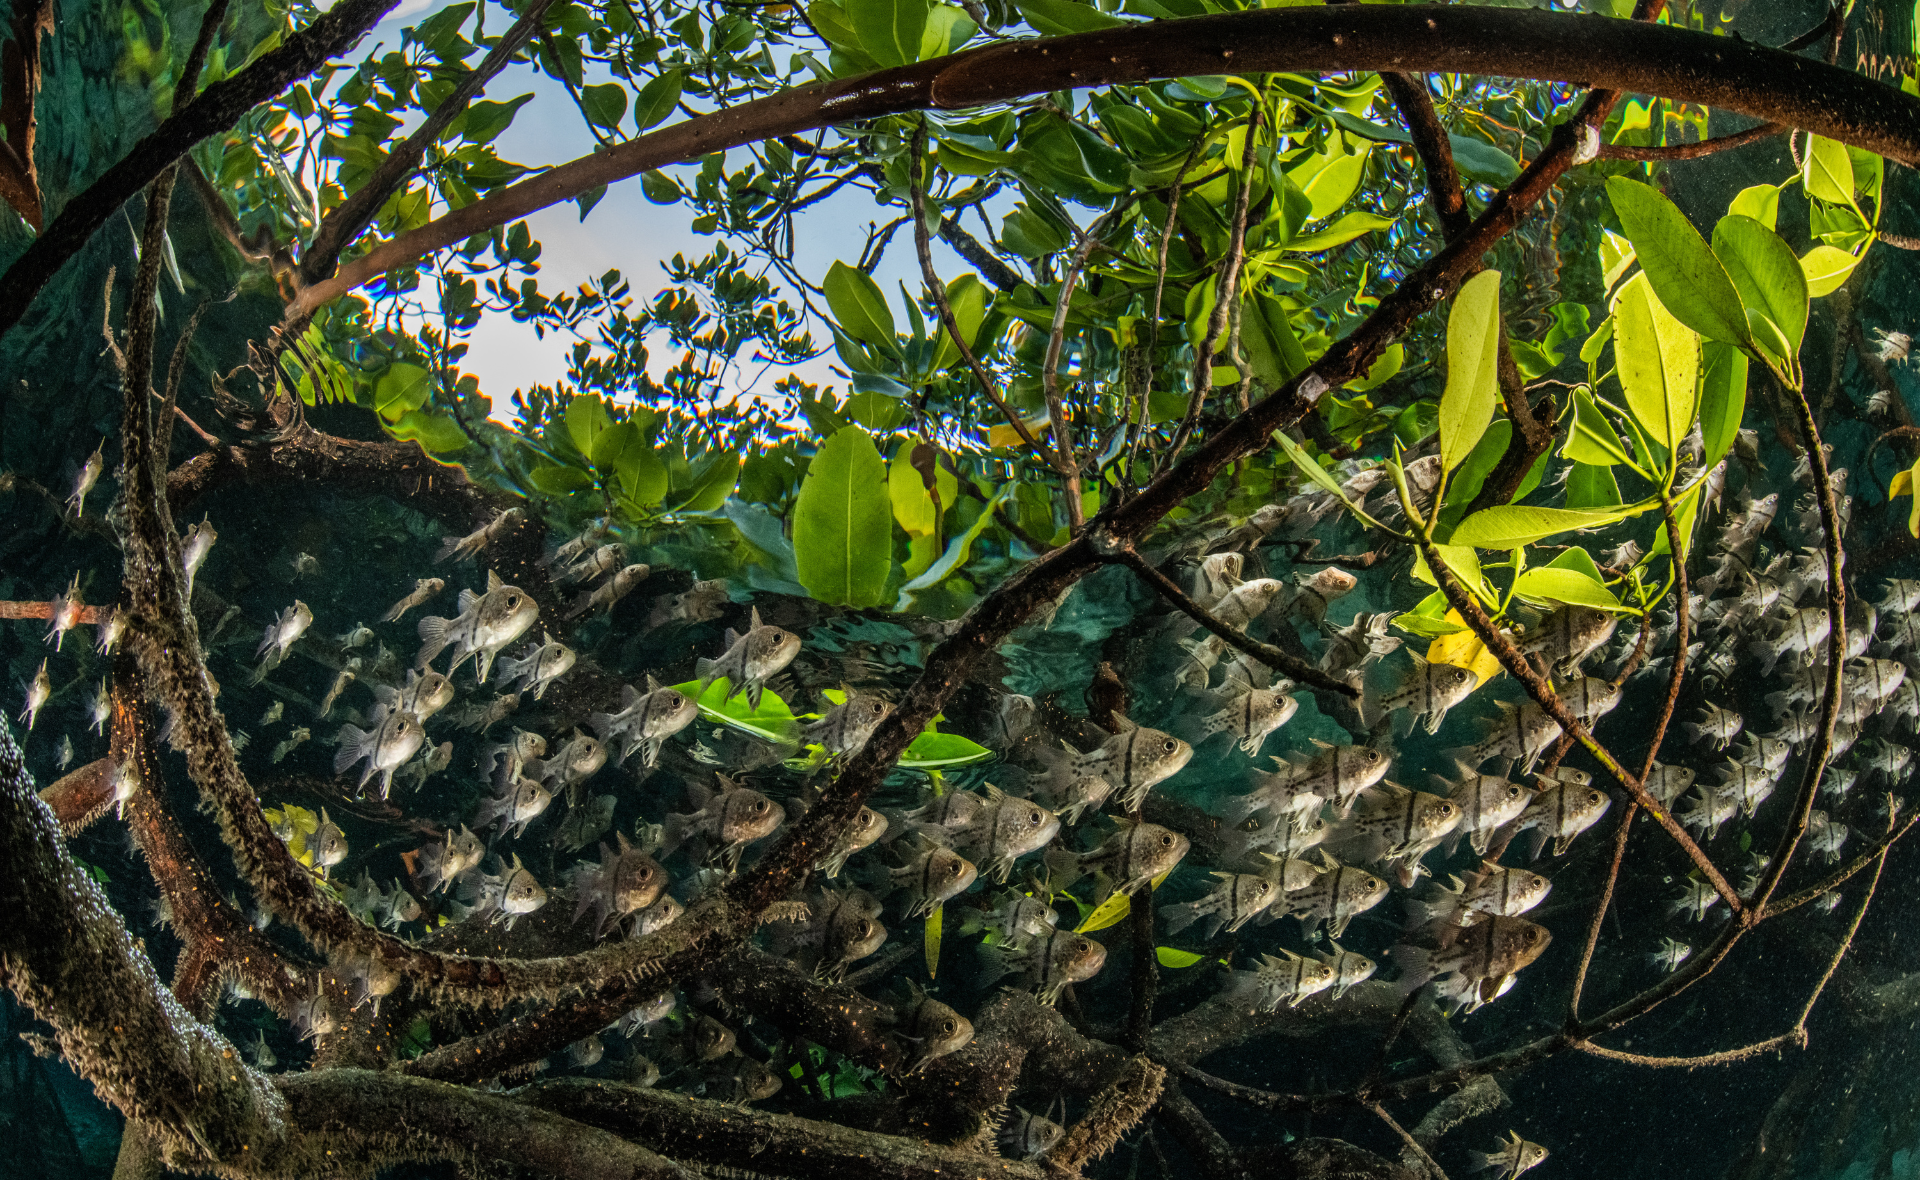 Un groupe de petits poissons nage à travers les racines des mangroves couvertes de feuilles vert tendre.